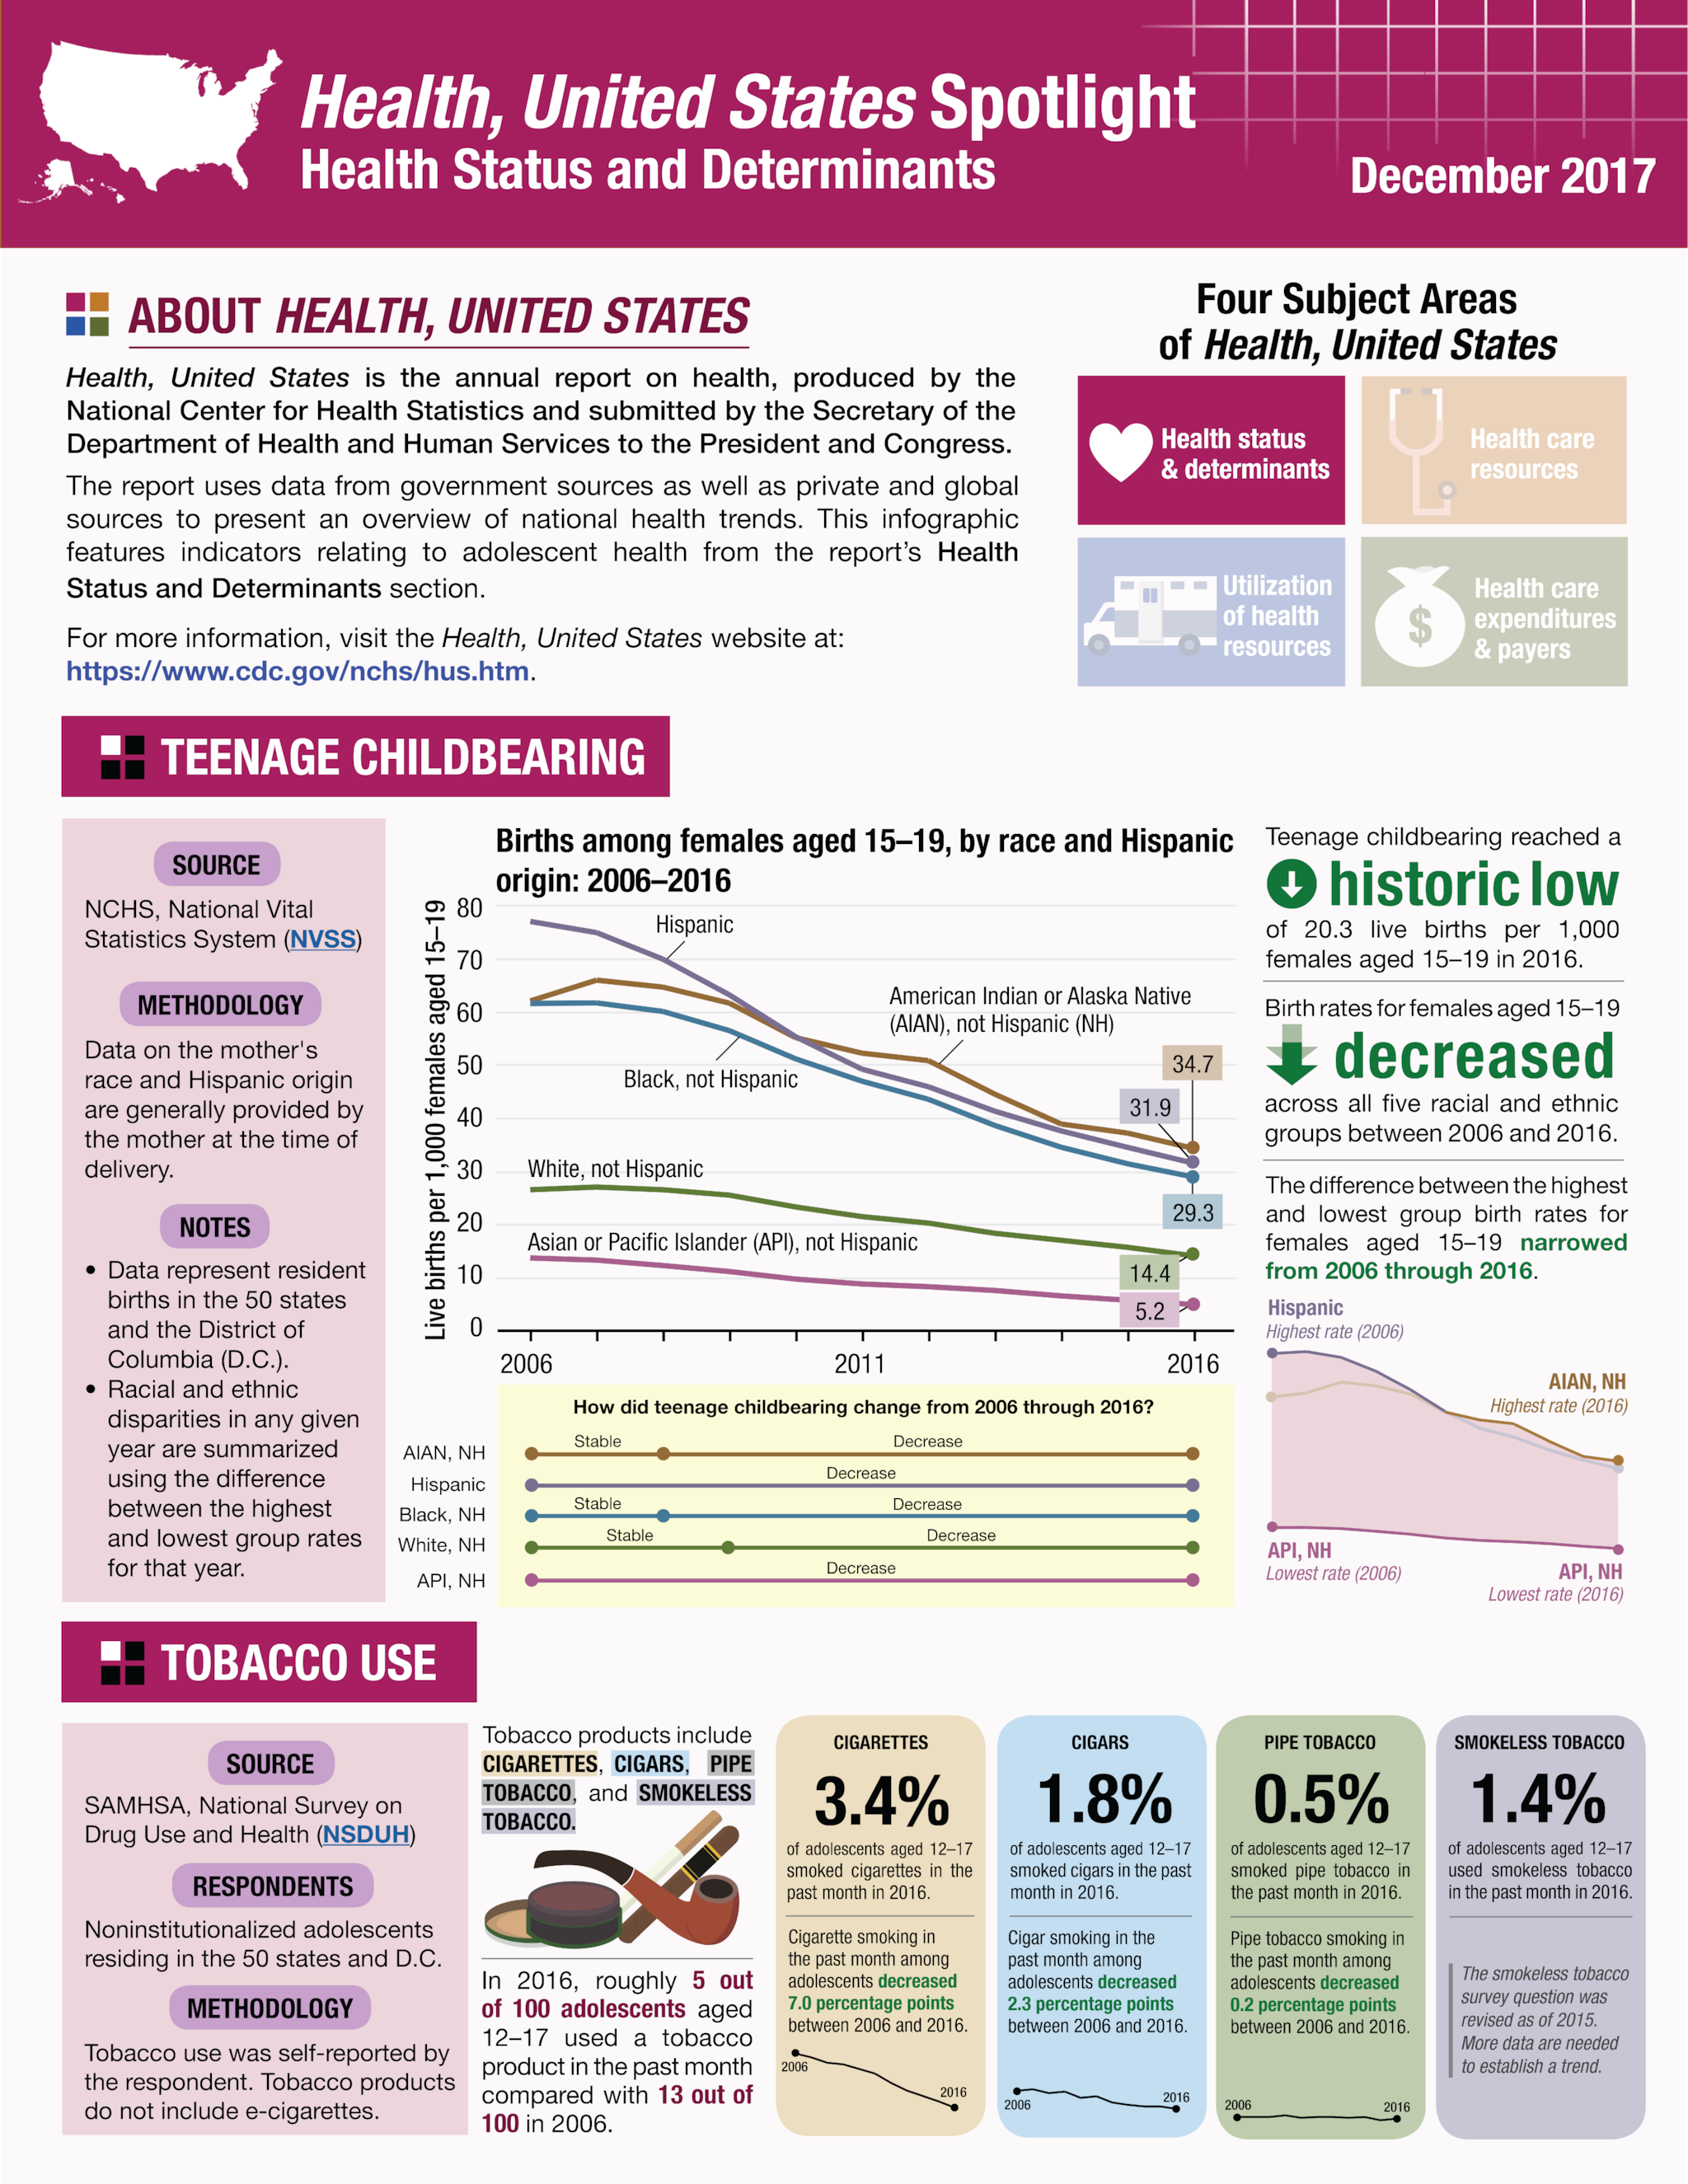 Health US - Spotlight - December 2017 - page 1